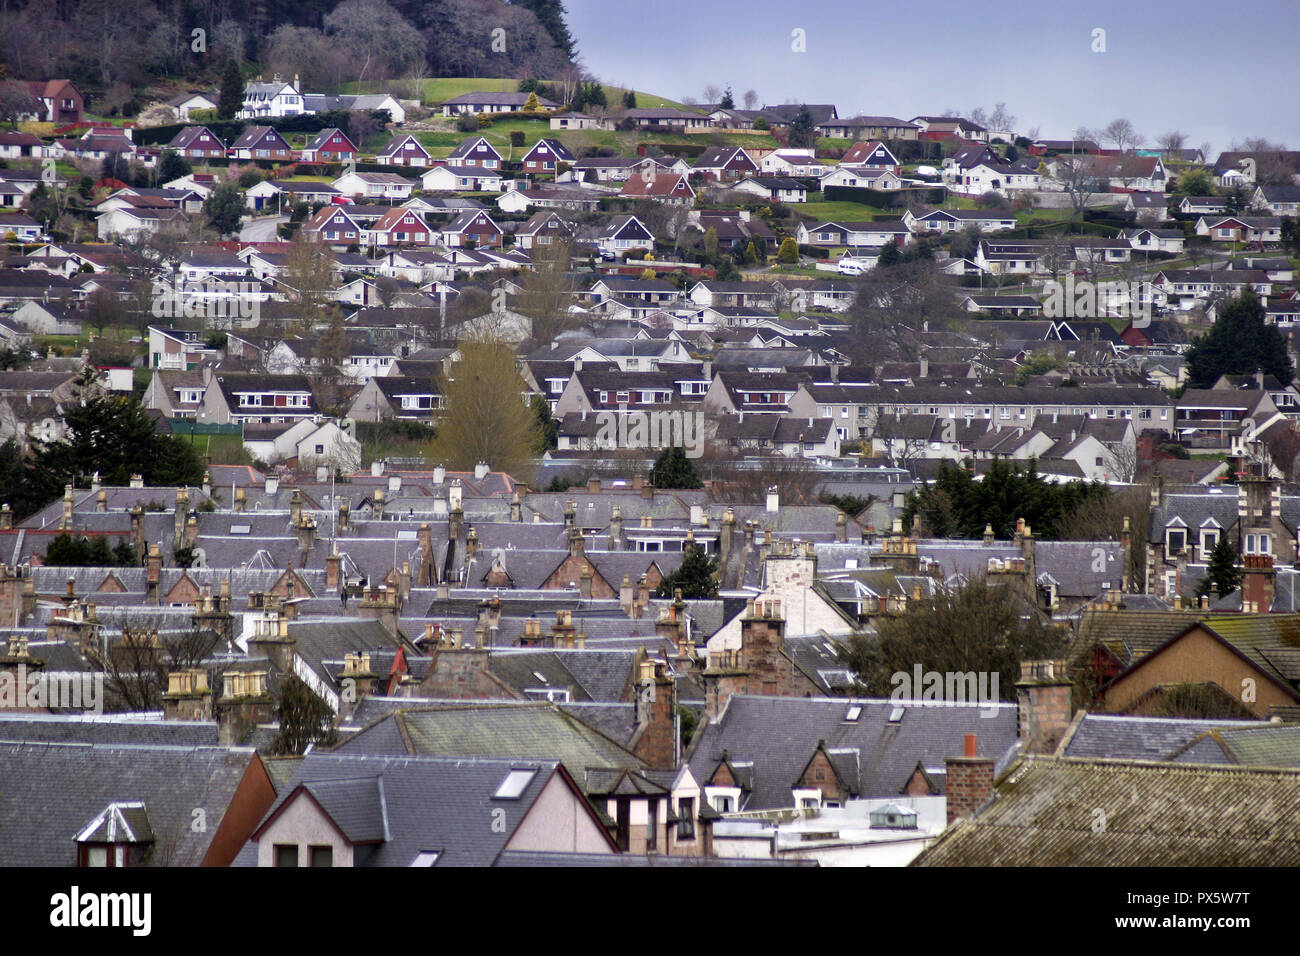 Une multitude de toits montrant une partie du parc de logements dans la ville d'Inverness, qui est appelée la capitale des highlands en Ecosse. Banque D'Images